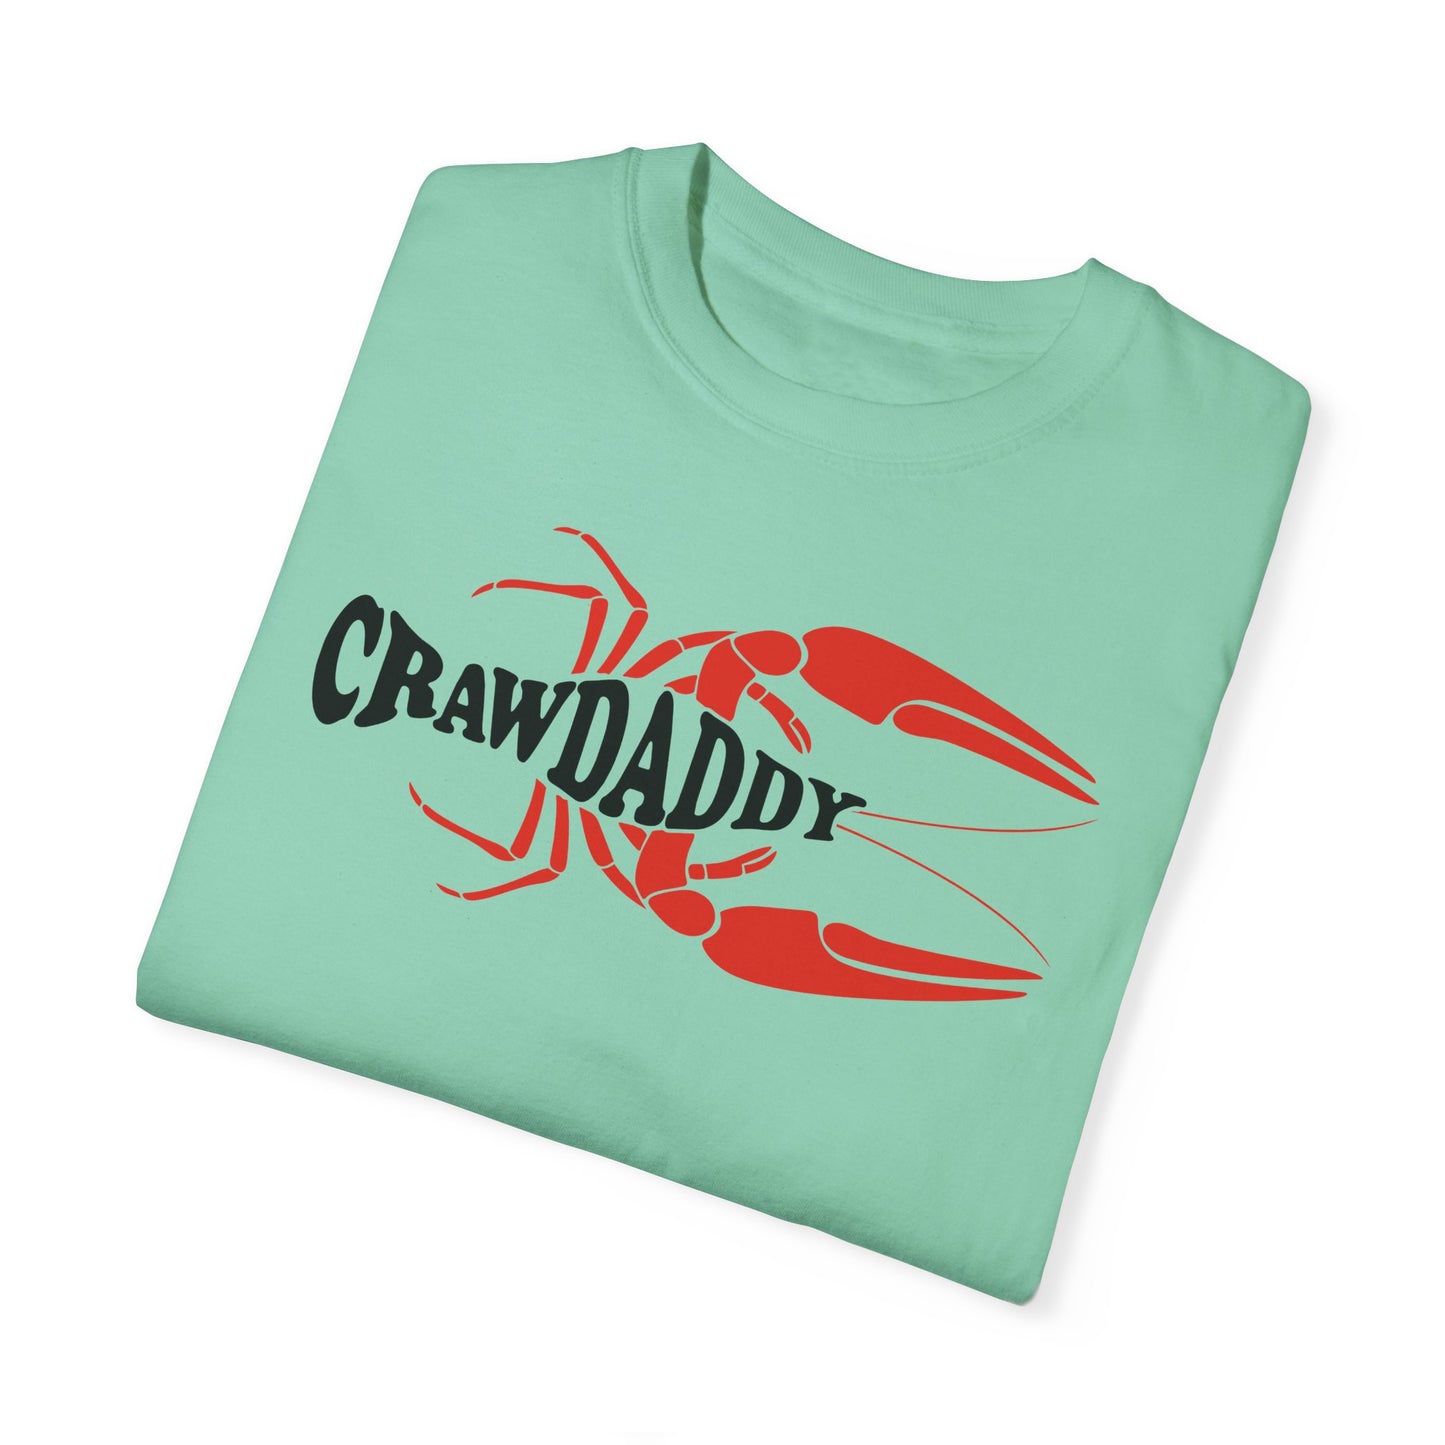 Crawdaddy Unisex Garment-Dyed T-shirt